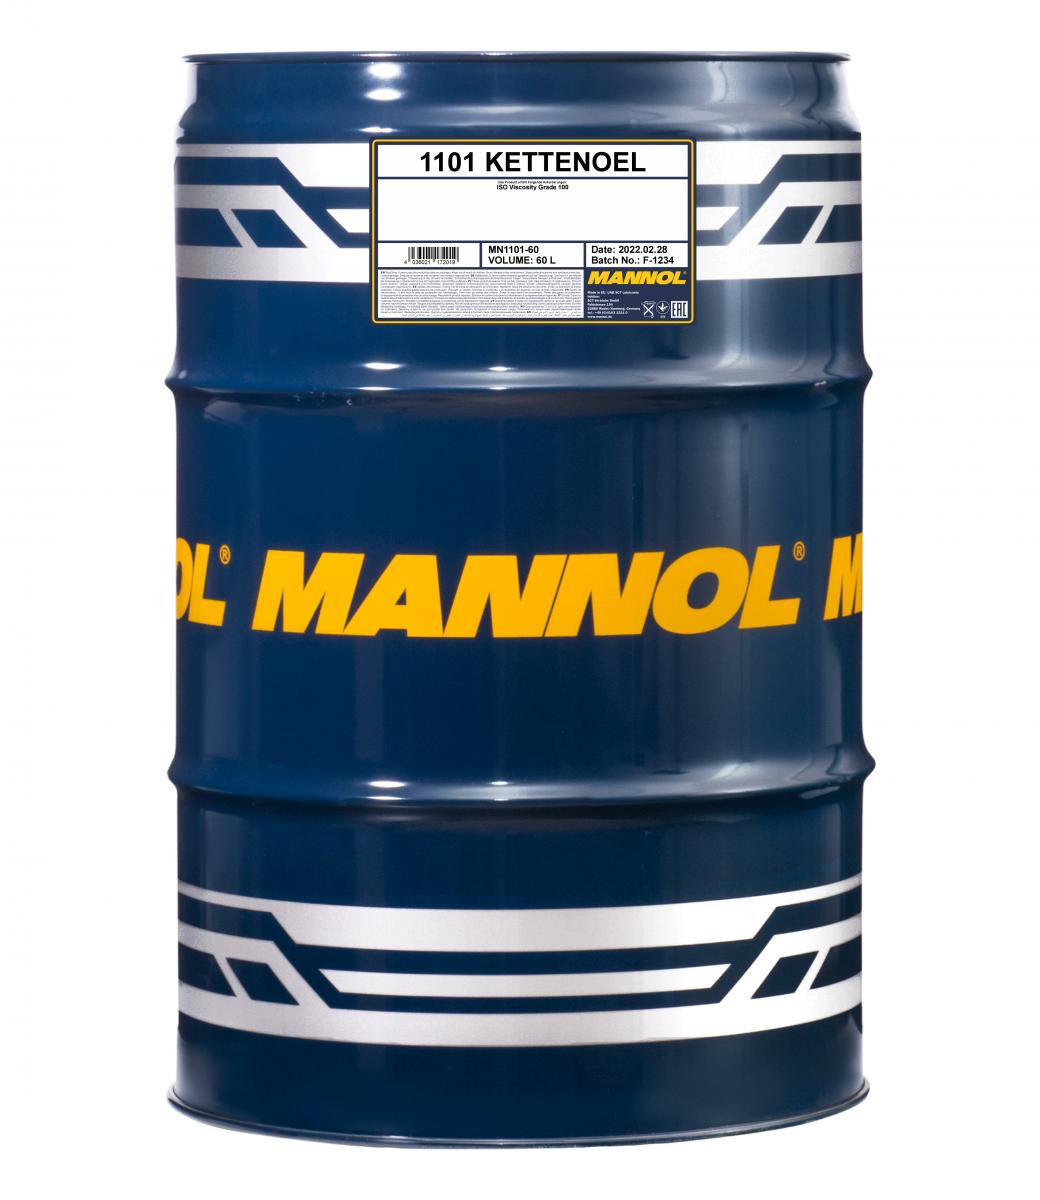 60 Liter MANNOL Kettenöl Öl für Gartentechnik